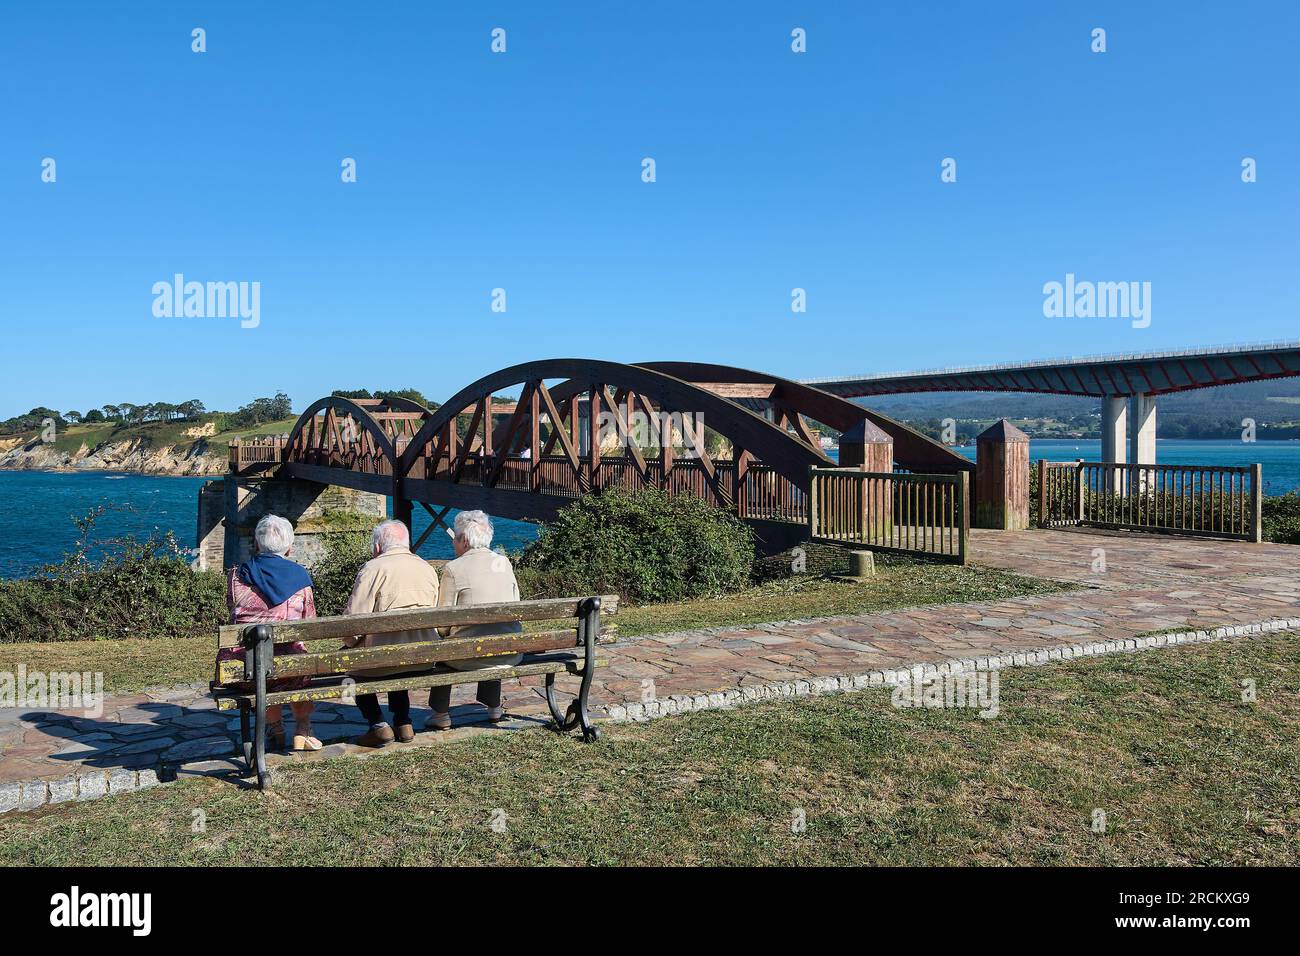 Personnes âgées méconnaissables assis sur un banc regardant le pont en bois sur les eaux de l'estuaire de Ribadeo Espagne Banque D'Images